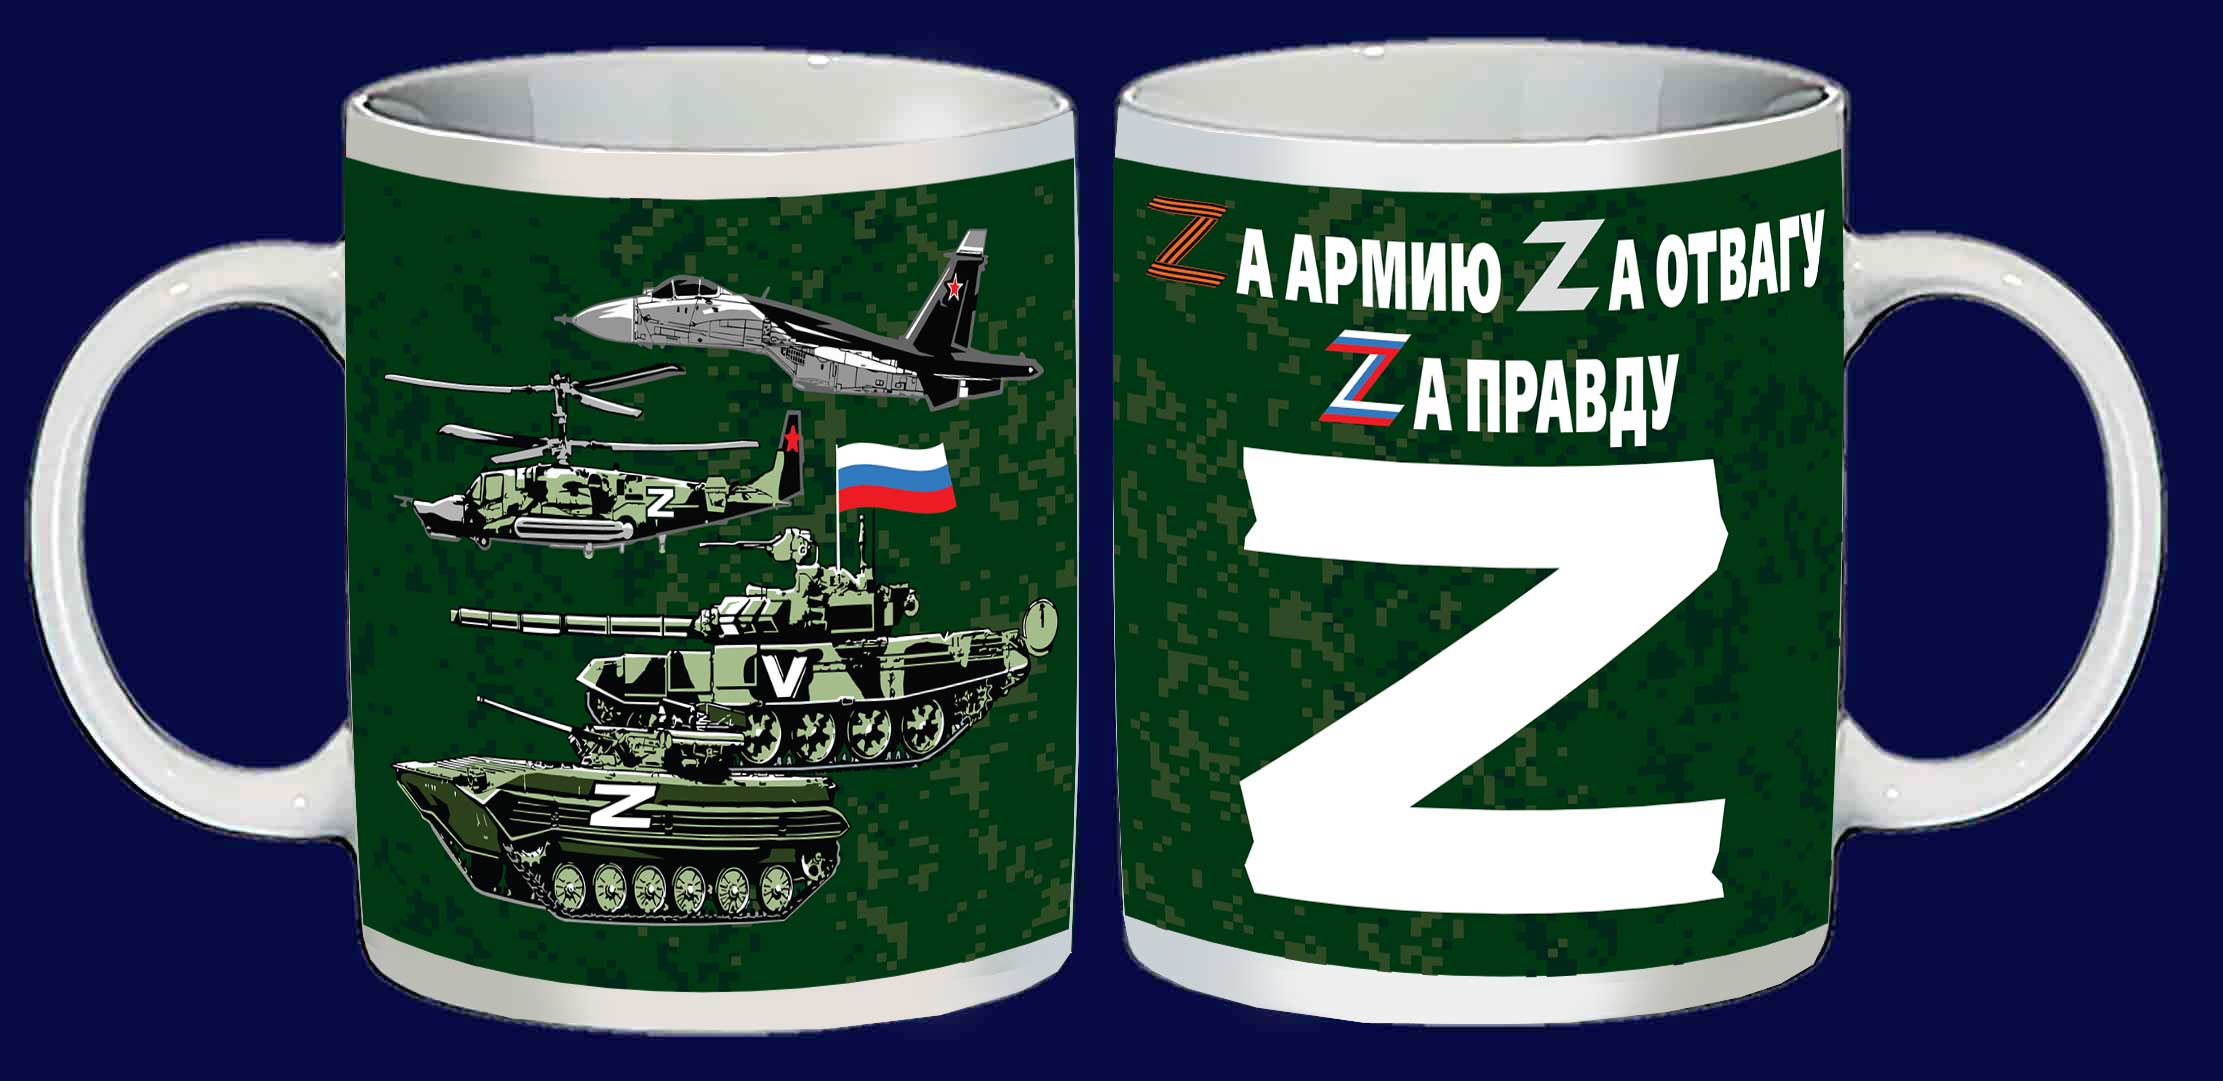 Купить кружку с надписью "Zа армию, Zа отвагу, Zа правду"